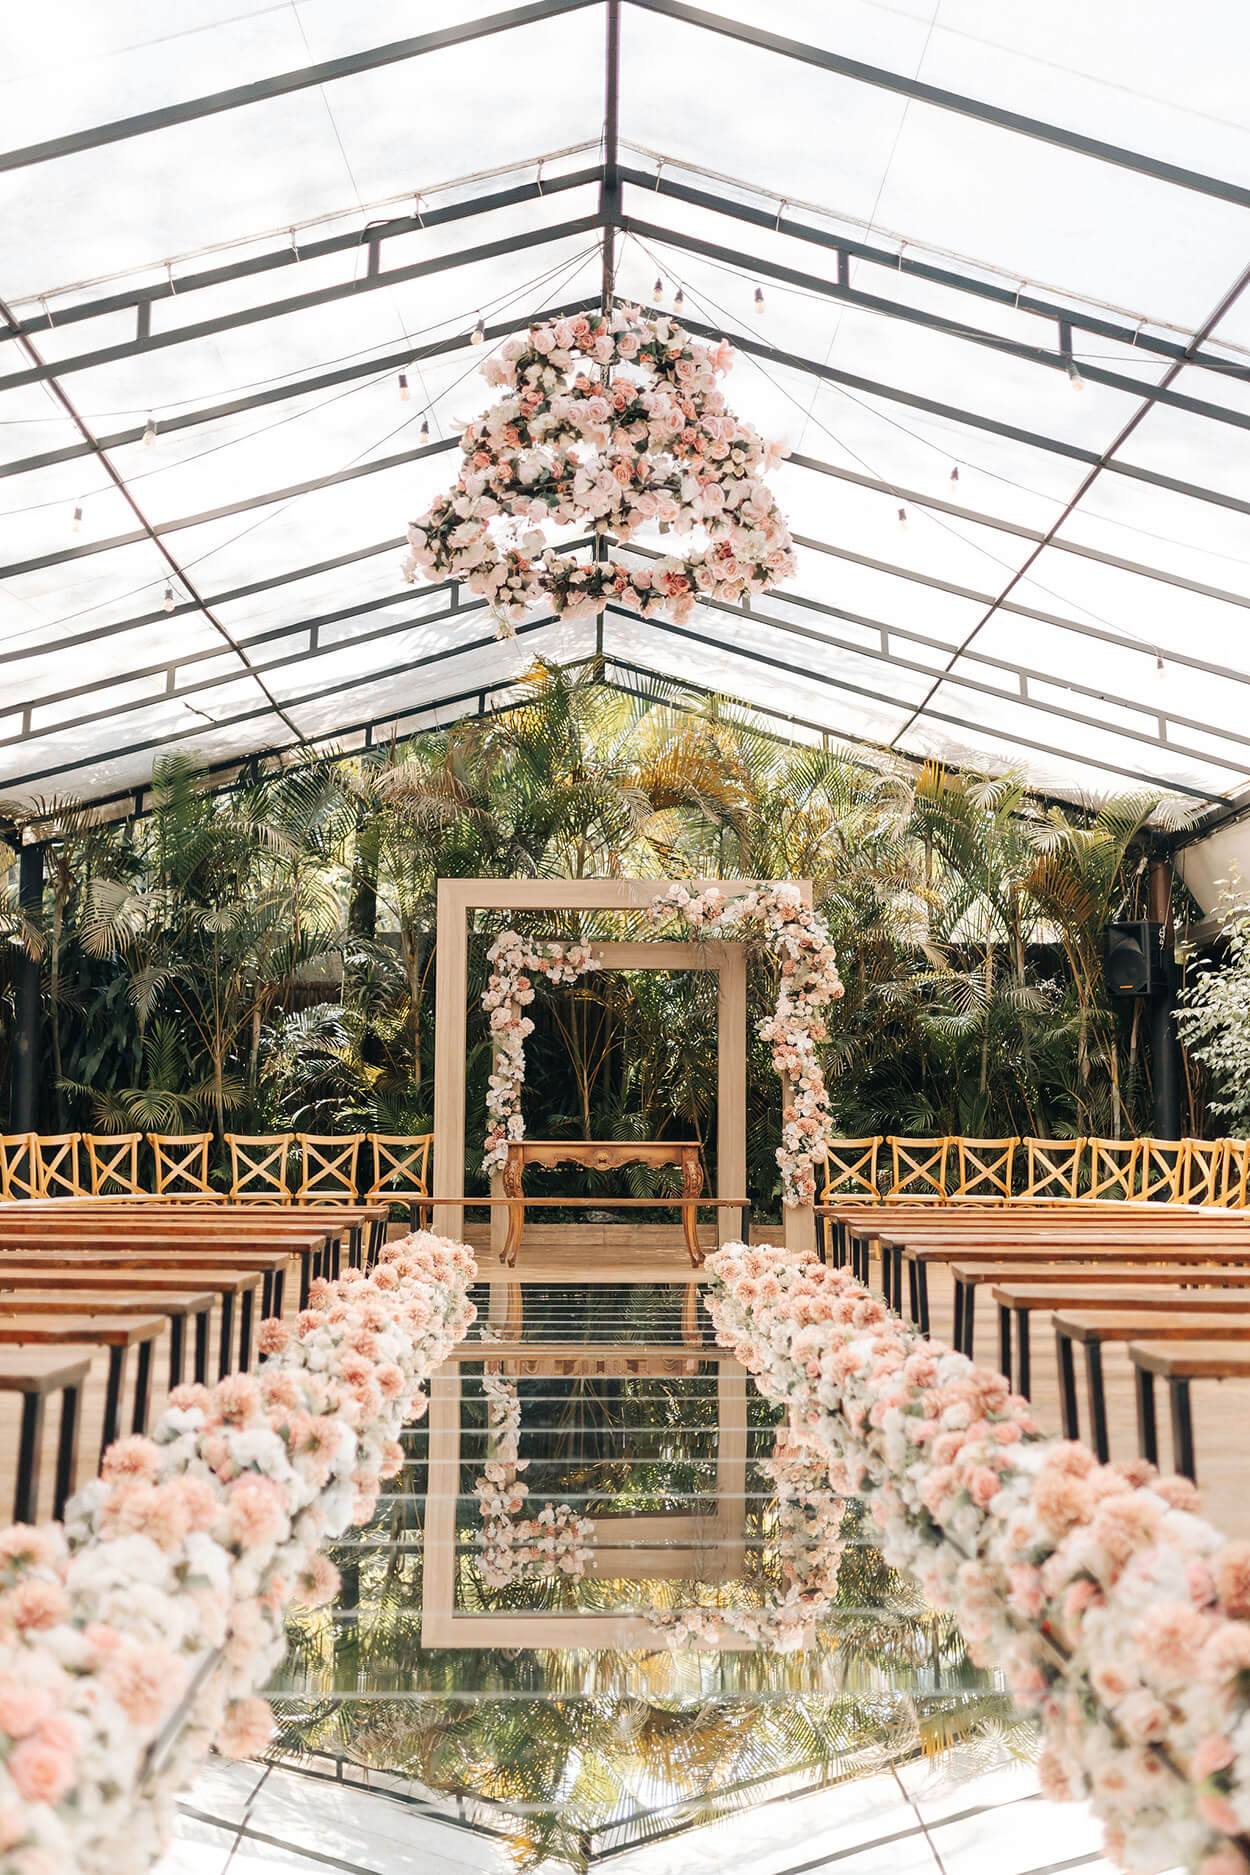 Salão coberto ao ar livre com bancos de madeira flores brancas e rosa e altar de madeira quadrado com flores